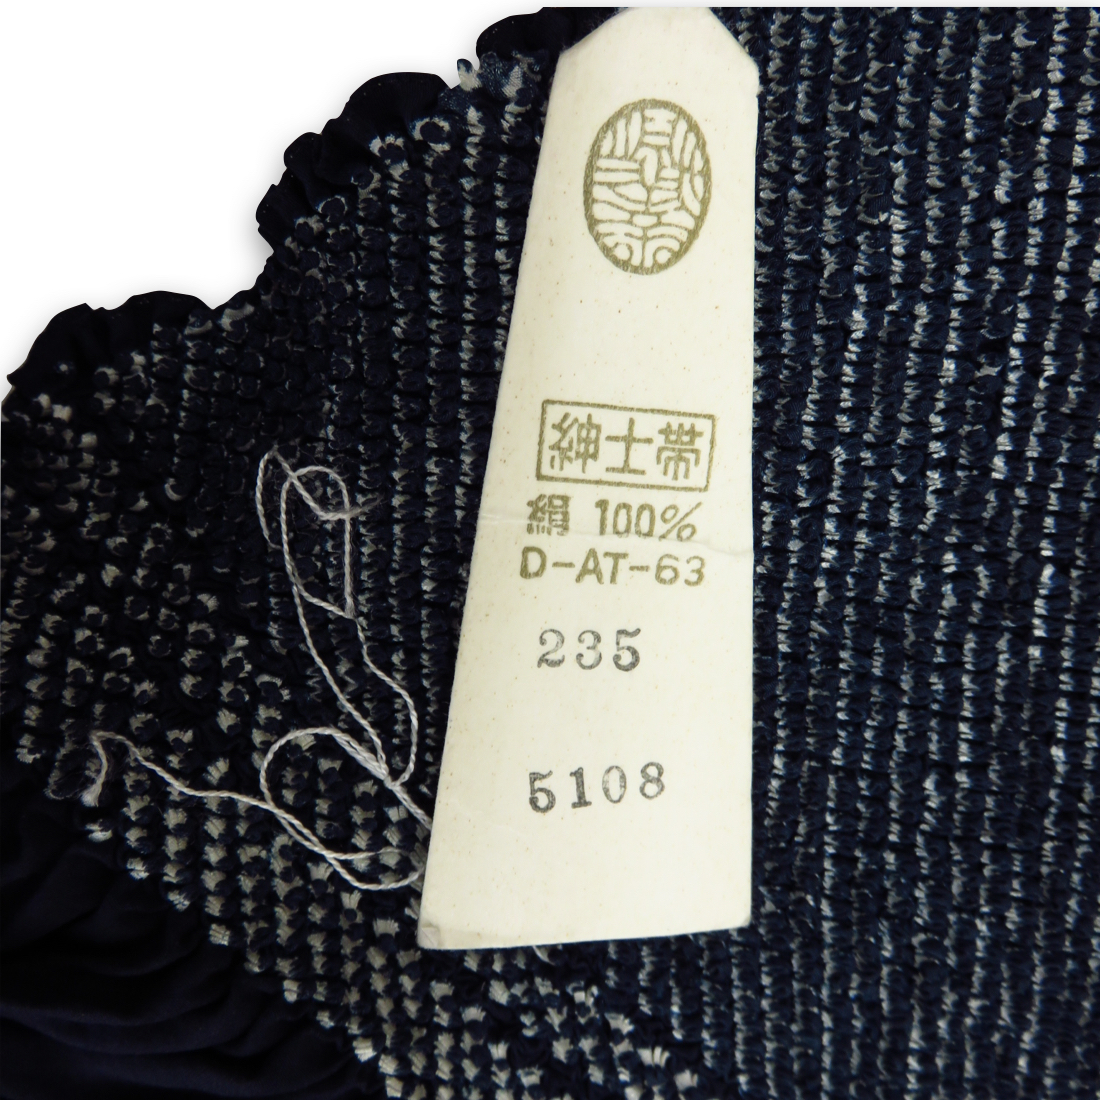 C85* новый товар быстрое решение роскошный столица олень. .... шелк пояс хекооби темно-синий цвет шелк 100% натуральный шелк примерно 3m примерно 3 метров мелкий рисунок эпонж ... obi мужской джентльмен кимоно юката obi диафрагмирования 